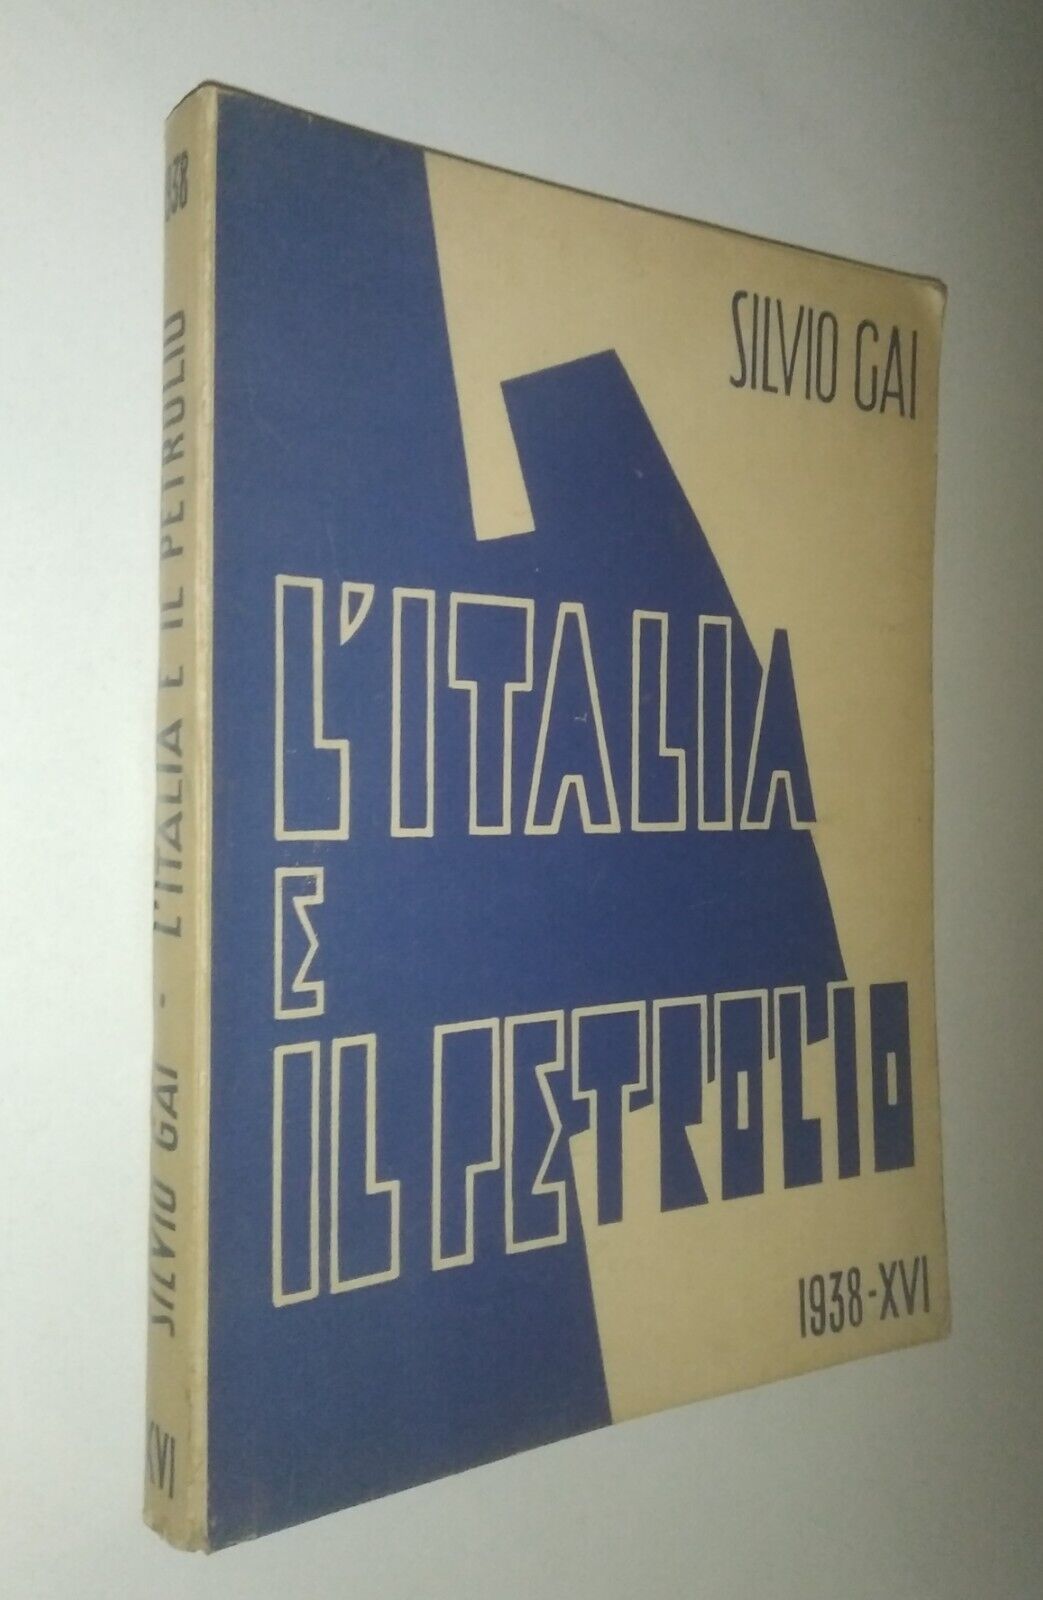 L’Italia e il petrolio di Silvio Gai (Arti grafiche Trinacria 1938)